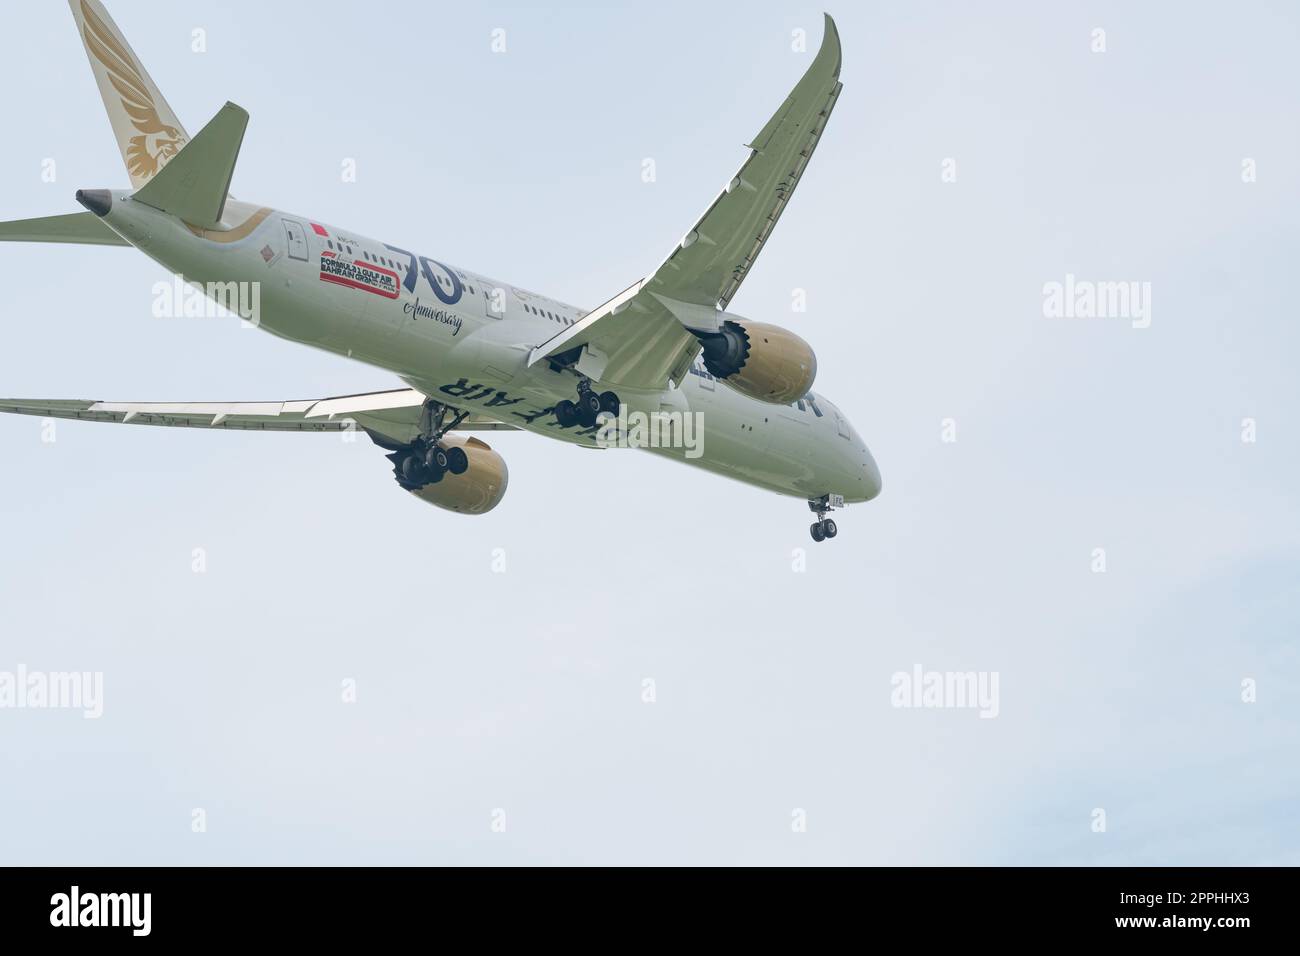 SAMUT PRAKAN, THAILANDIA - 14 OTTOBRE 2022: Aereo commerciale Gulf Air che vola nel cielo. Decollo o atterraggio dell'aereo passeggeri. Il vettore di bandiera del Bahrein. Volo internazionale. Trasporto aereo. Foto Stock